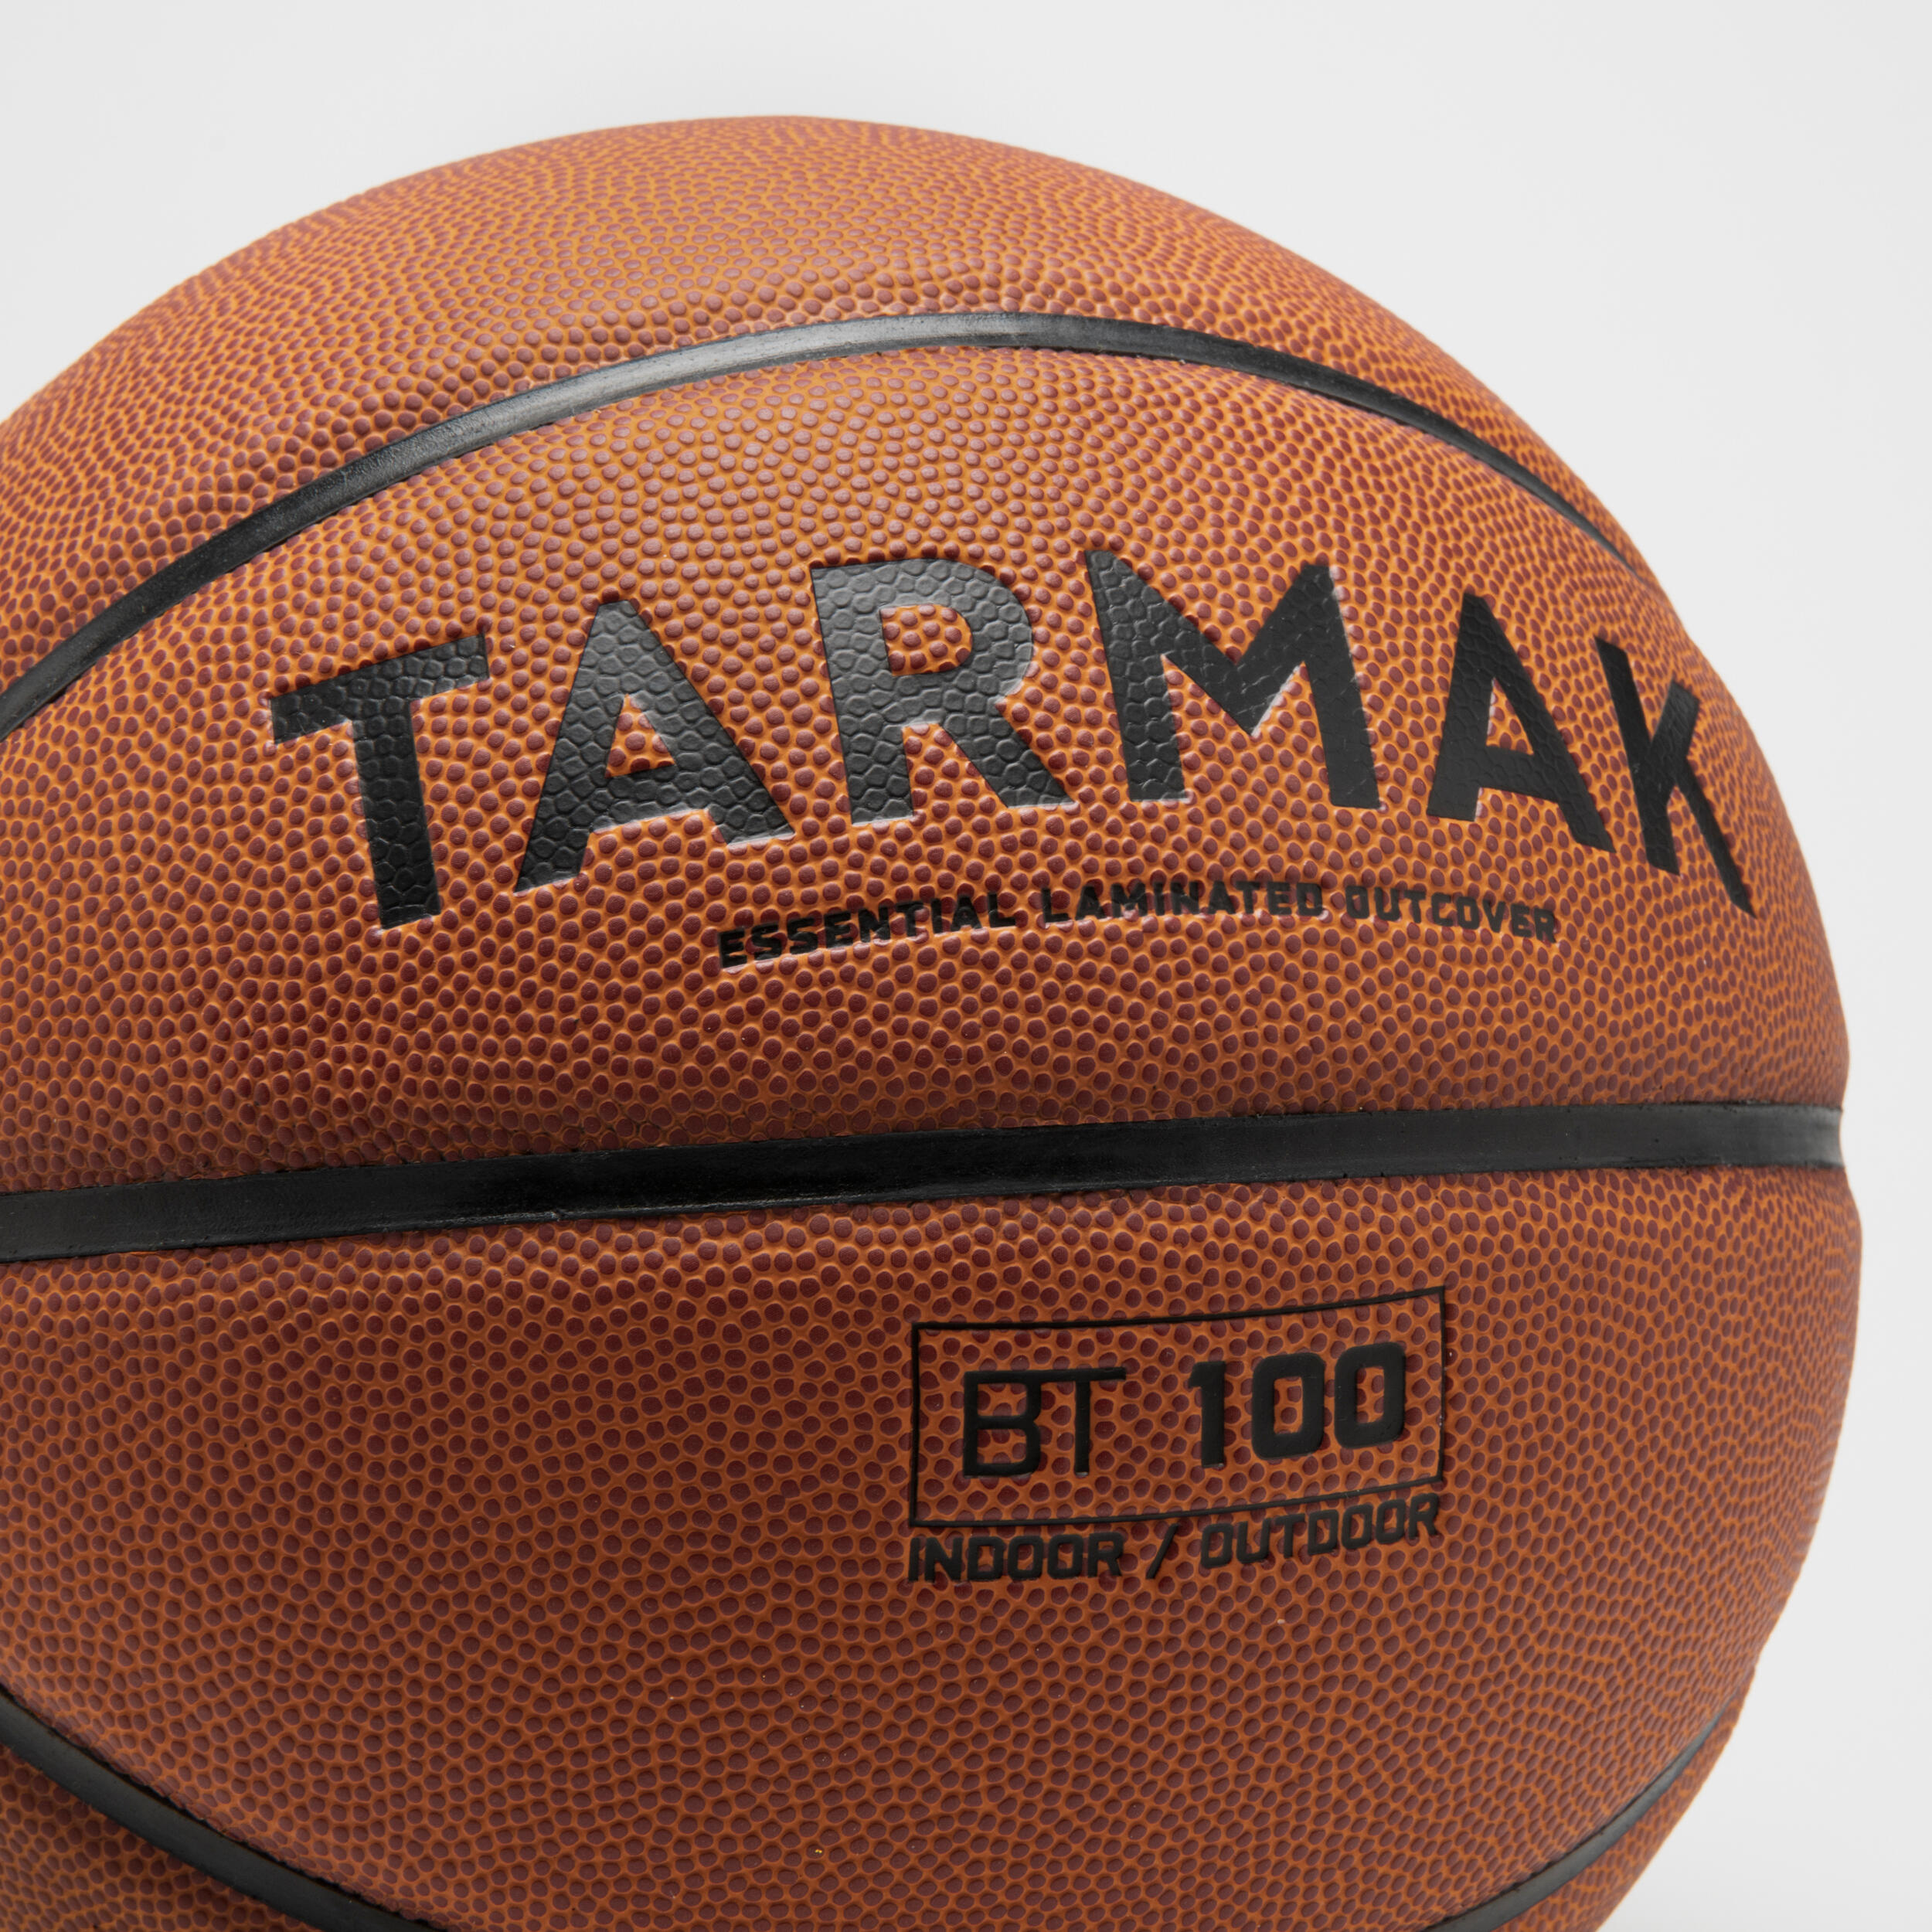 Size 6 FIBA Basketball BT100 Touch - Brown 4/7